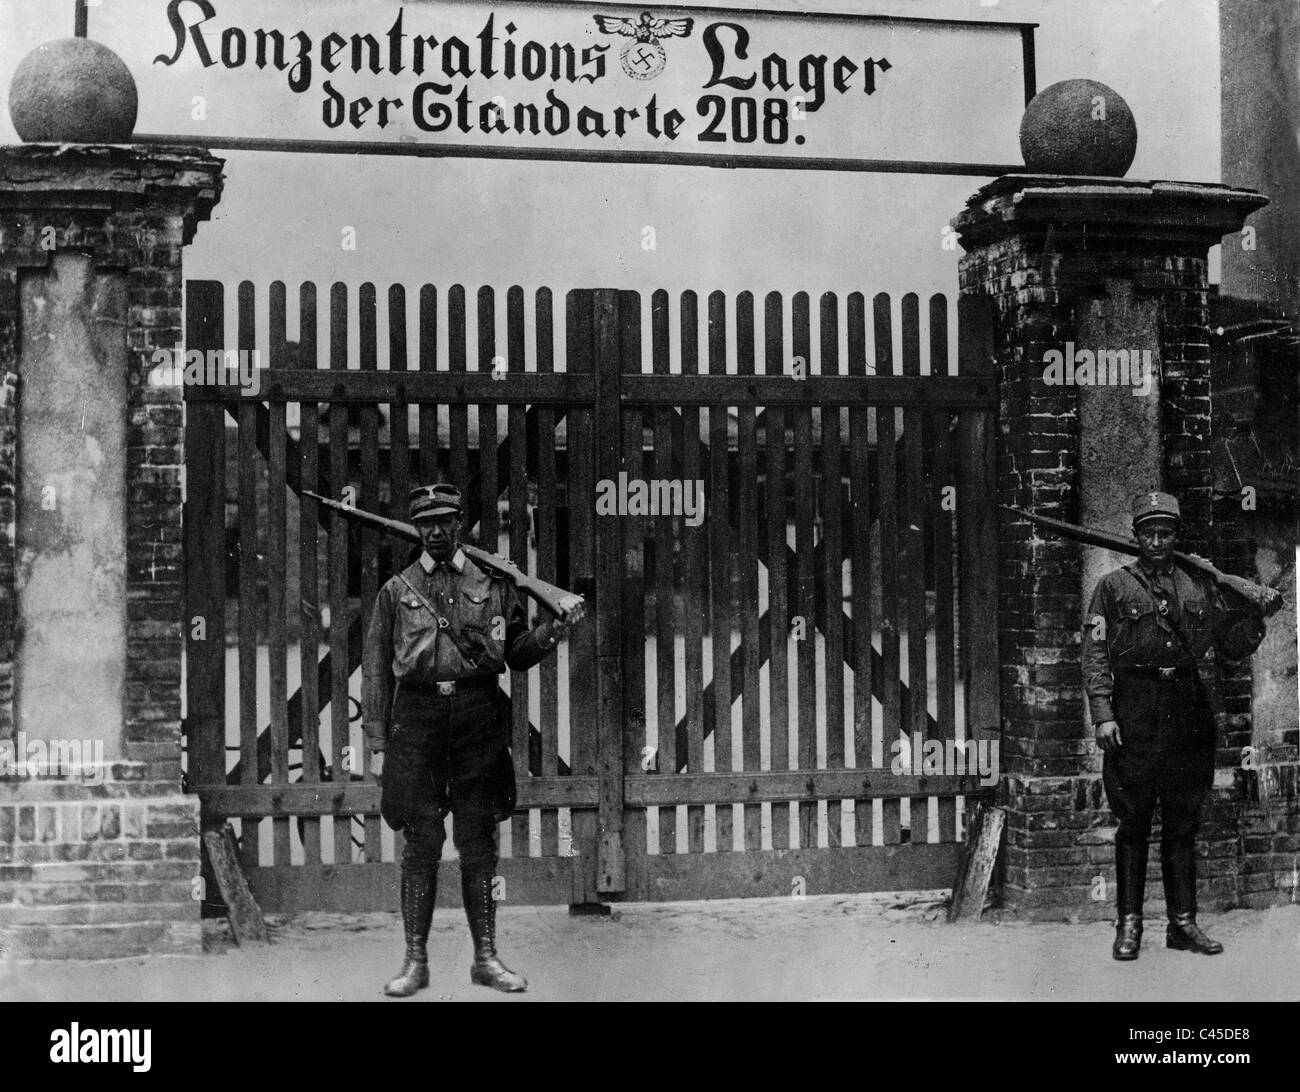 Konzentration Lager Oranienburg bei Berlin Stockfoto